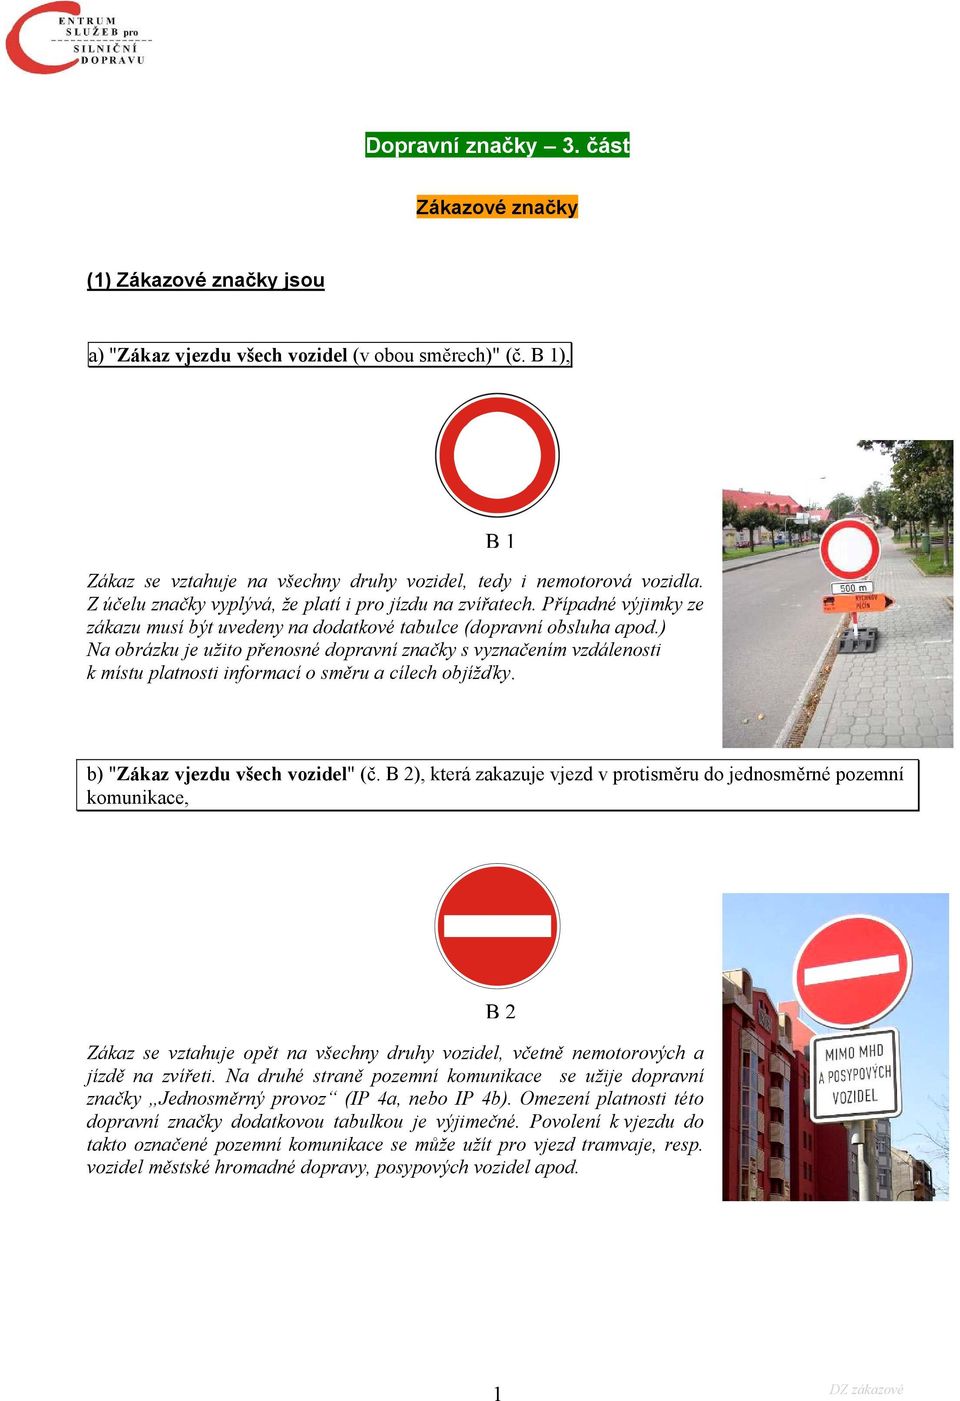 ) Na obrázku je užito přenosné dopravní značky s vyznačením vzdálenosti k místu platnosti informací o směru a cílech objížďky. B1 b) "Zákaz vjezdu všech vozidel" (č.